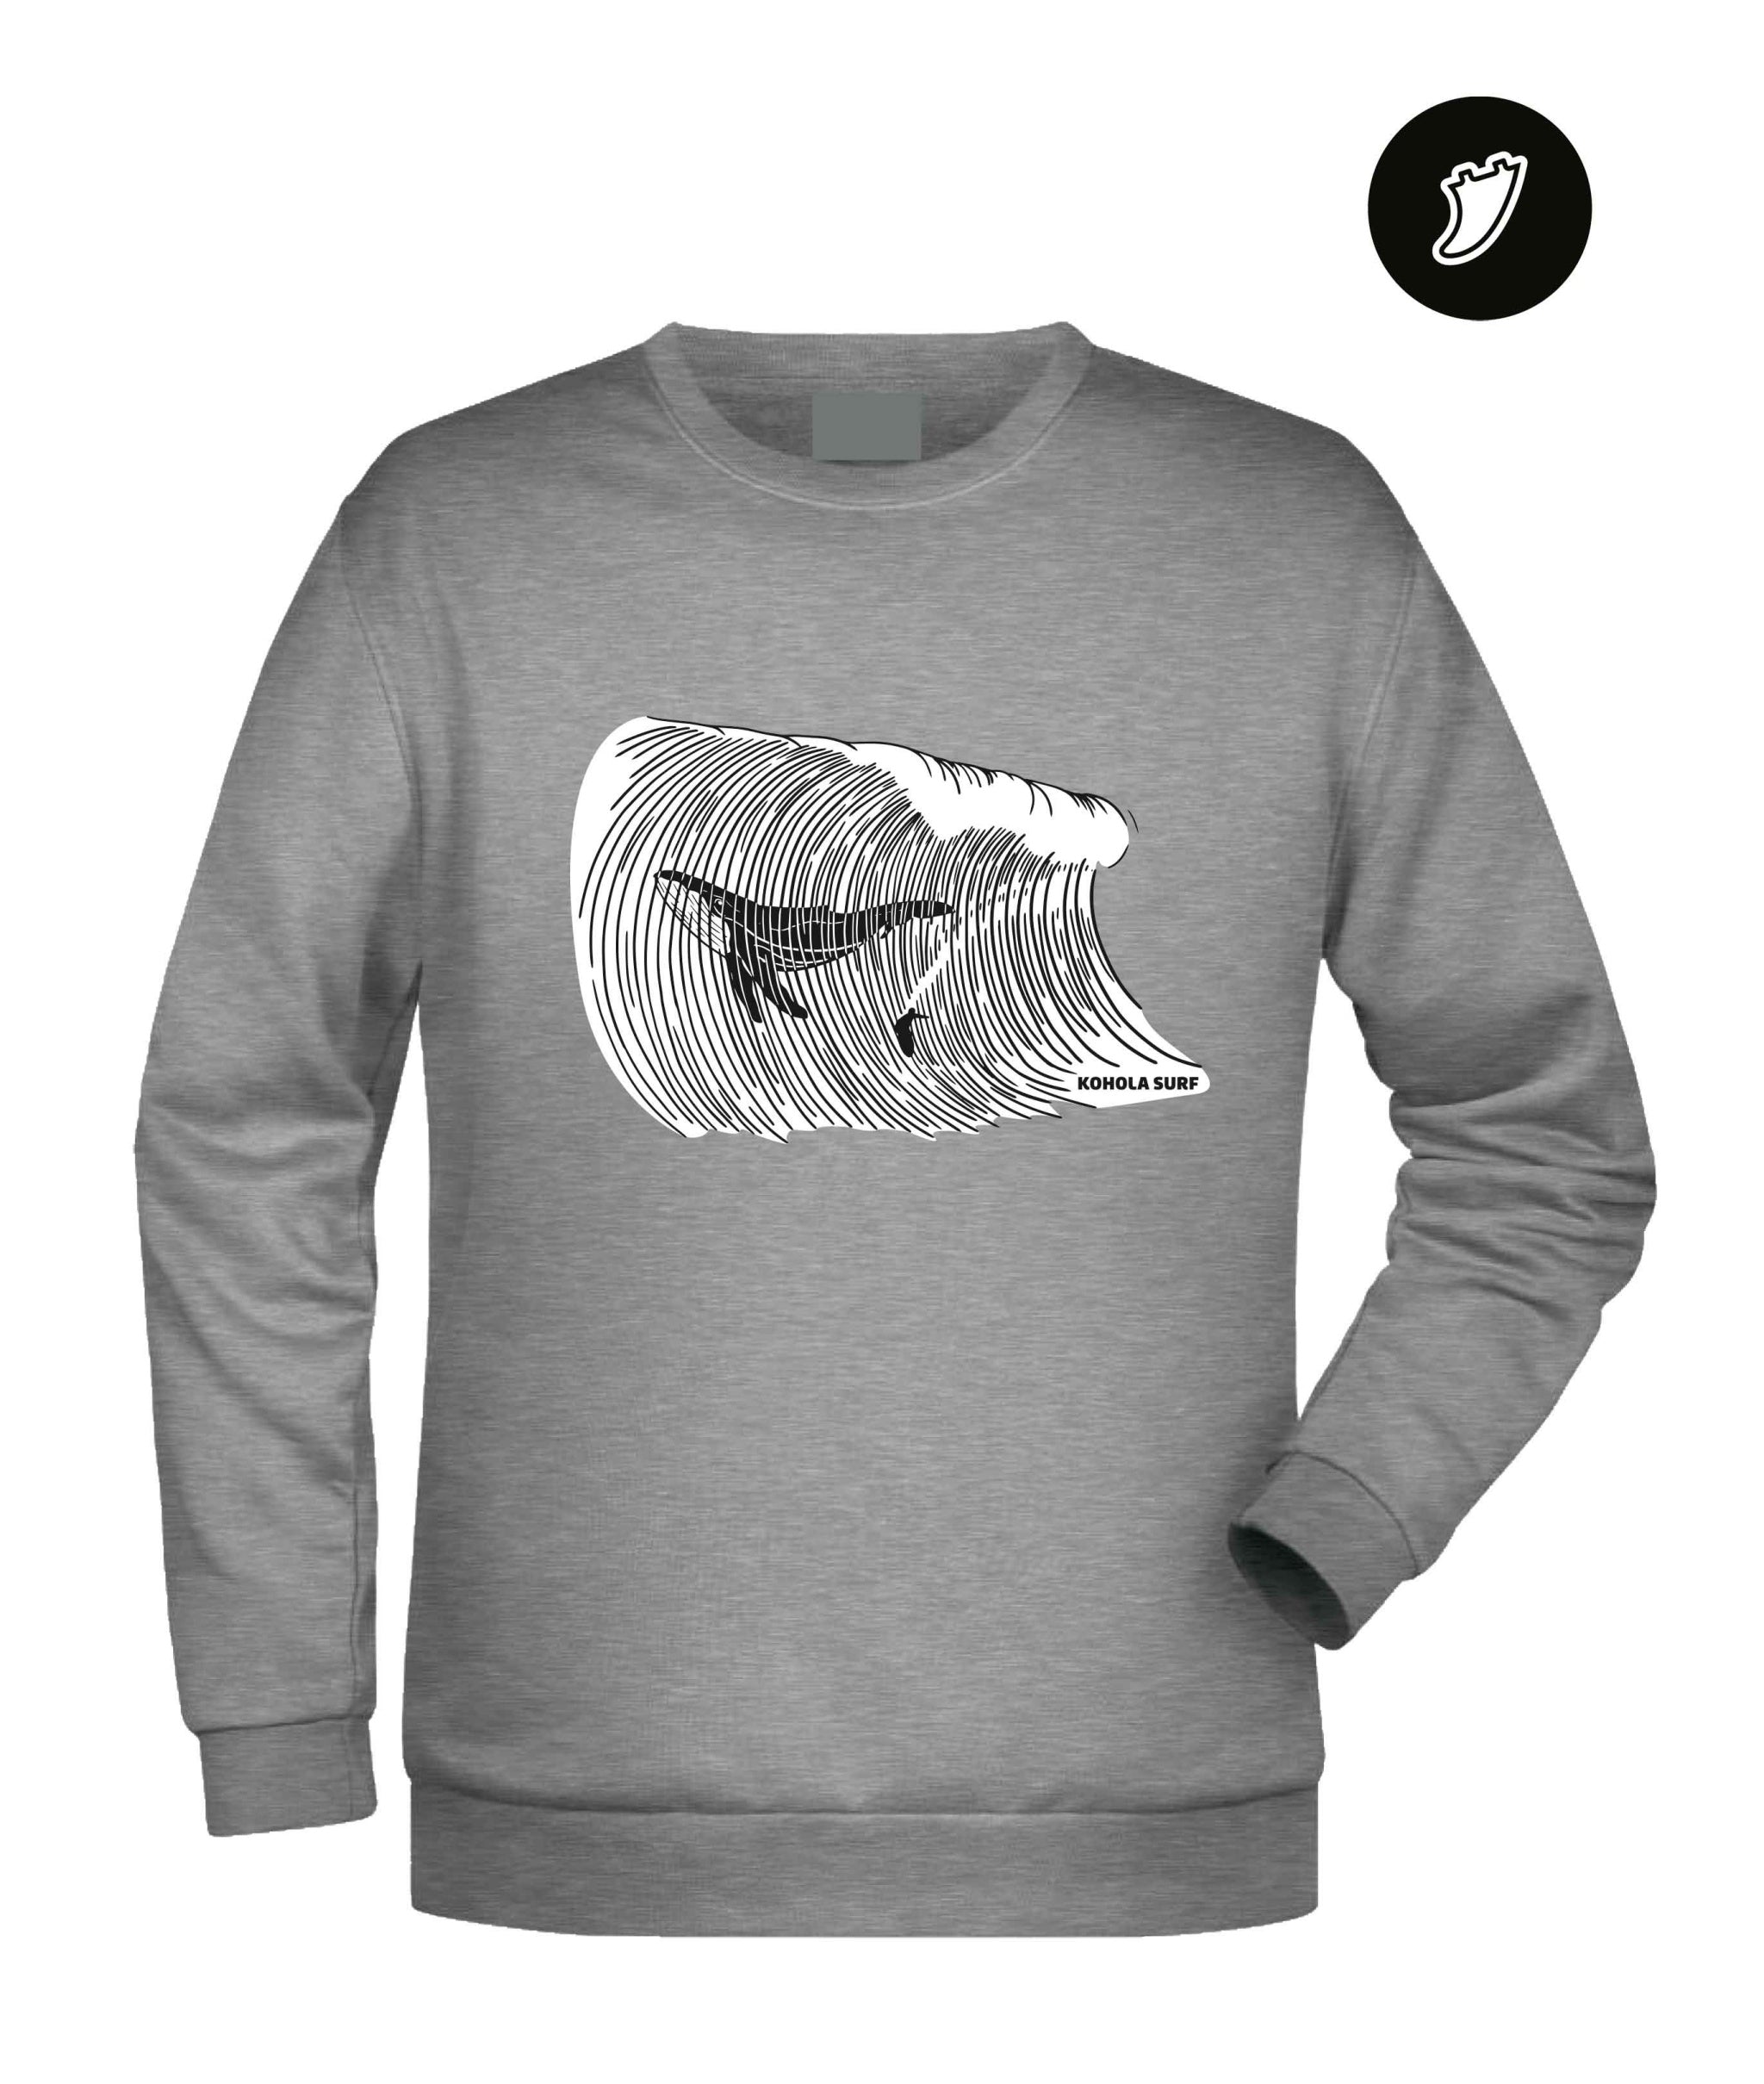 Big Whale Surfing Unisex Sweatshirt